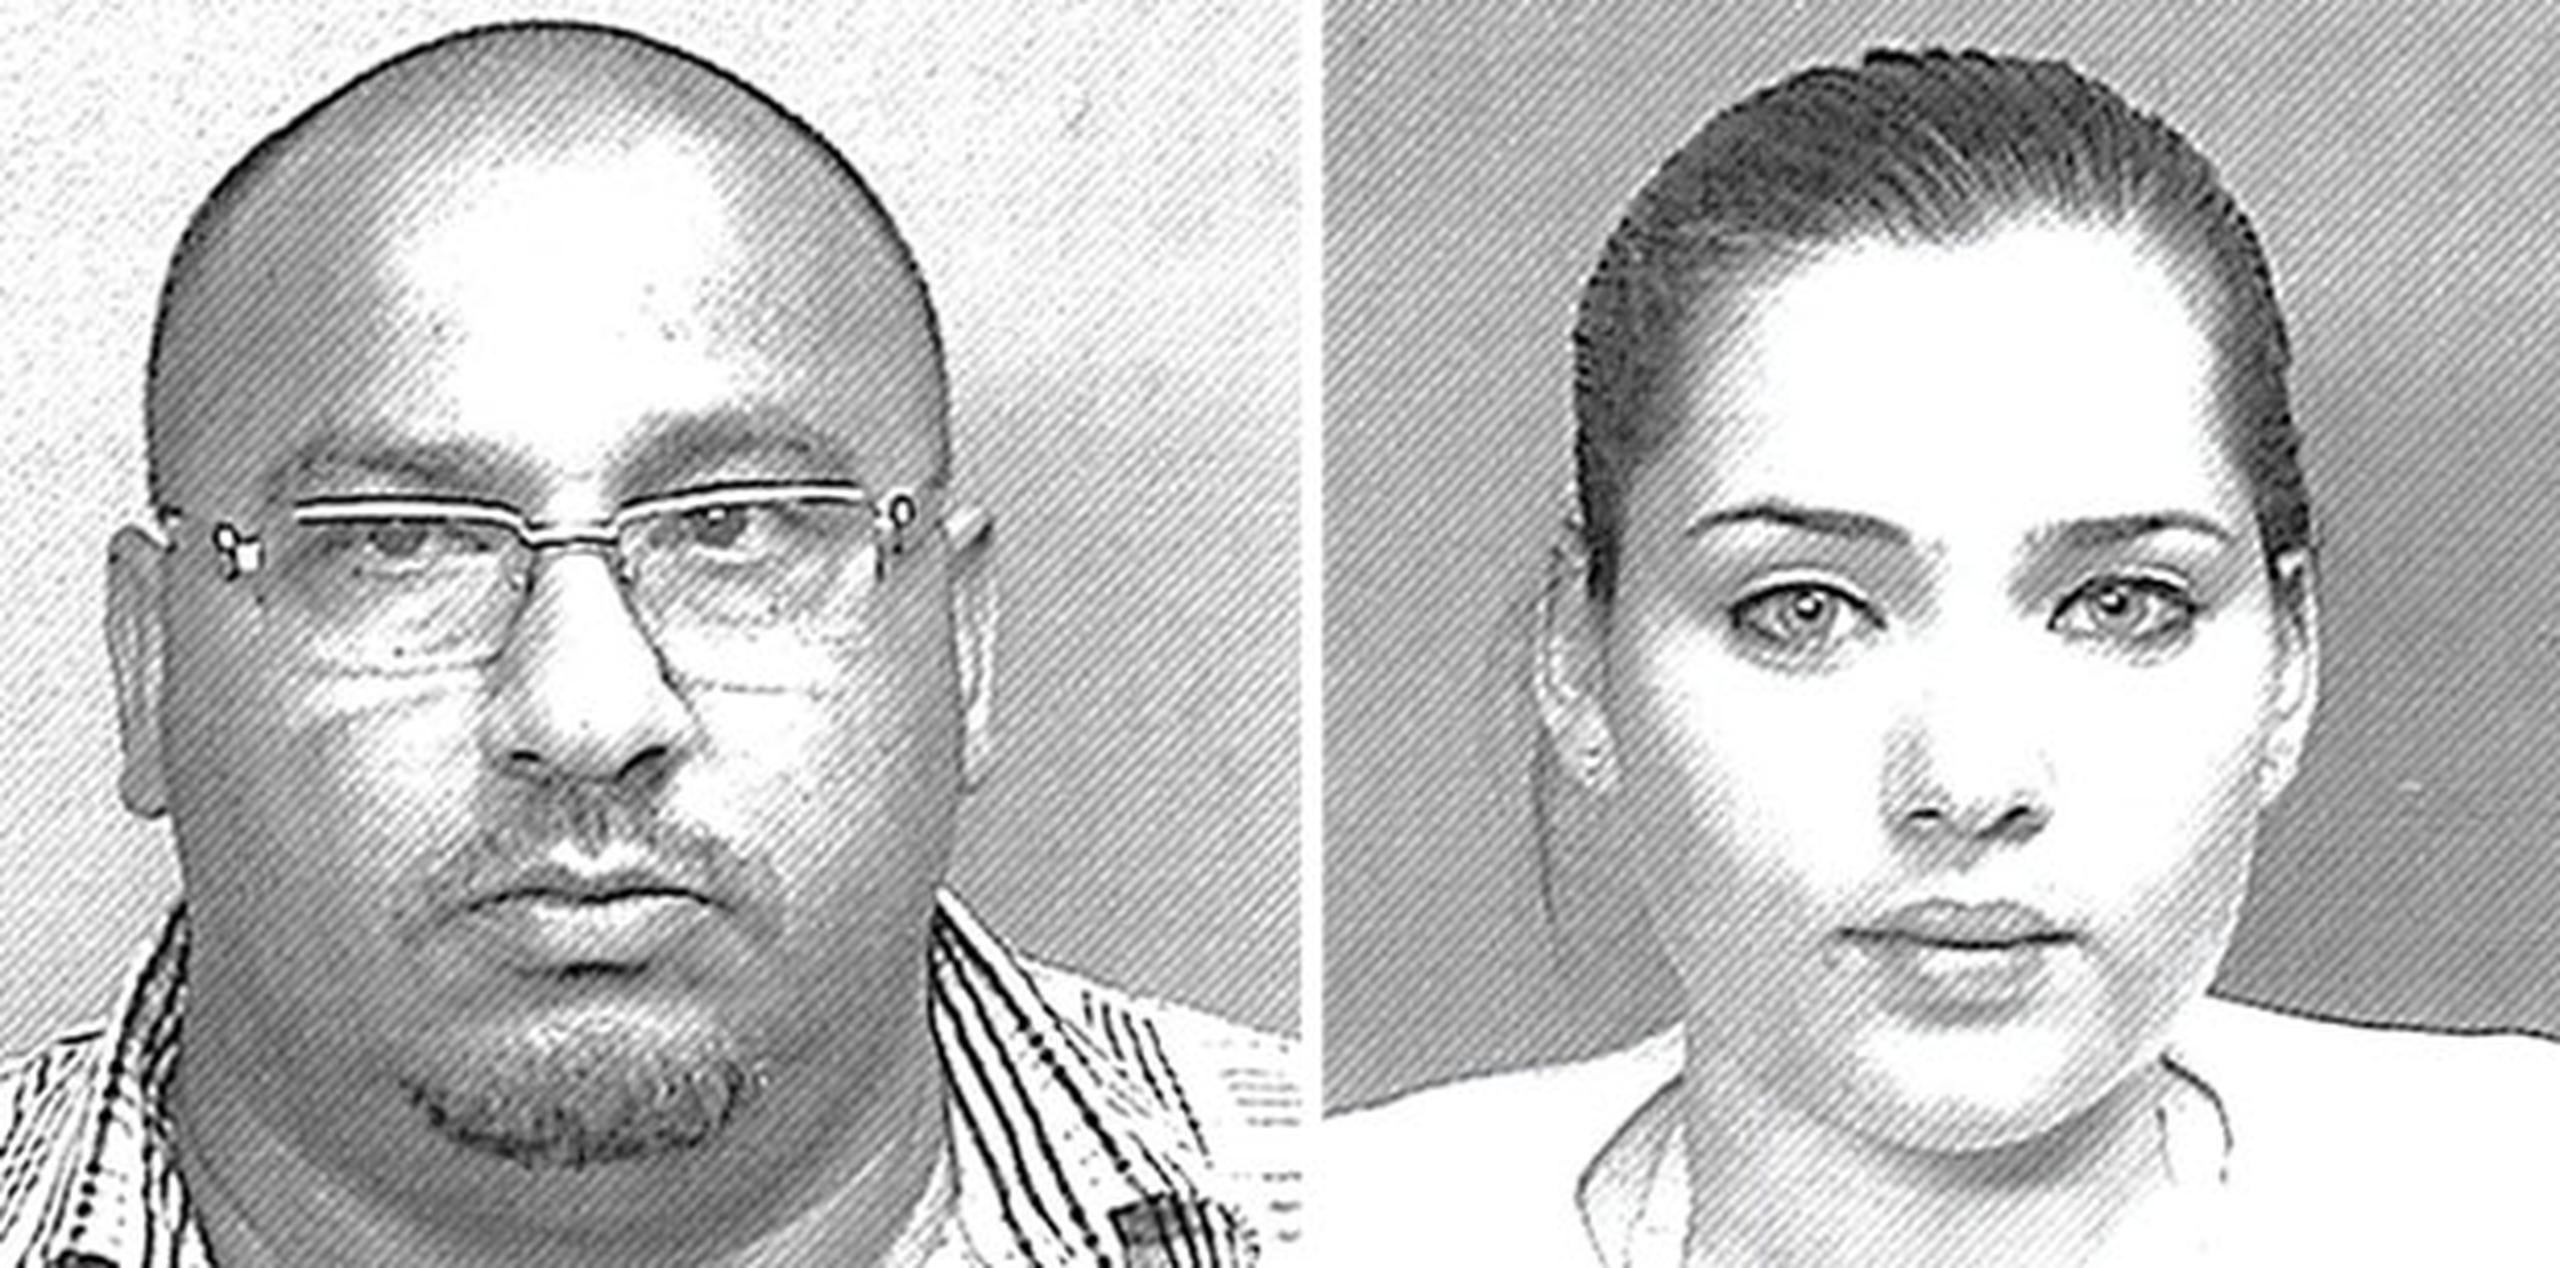 A Orlando Merced Morales se le señaló una fianza de $45,000, y a Alisa Hernández Torres, de $7,500, las cuales fueron prestadas por ambos. (Suministradas)